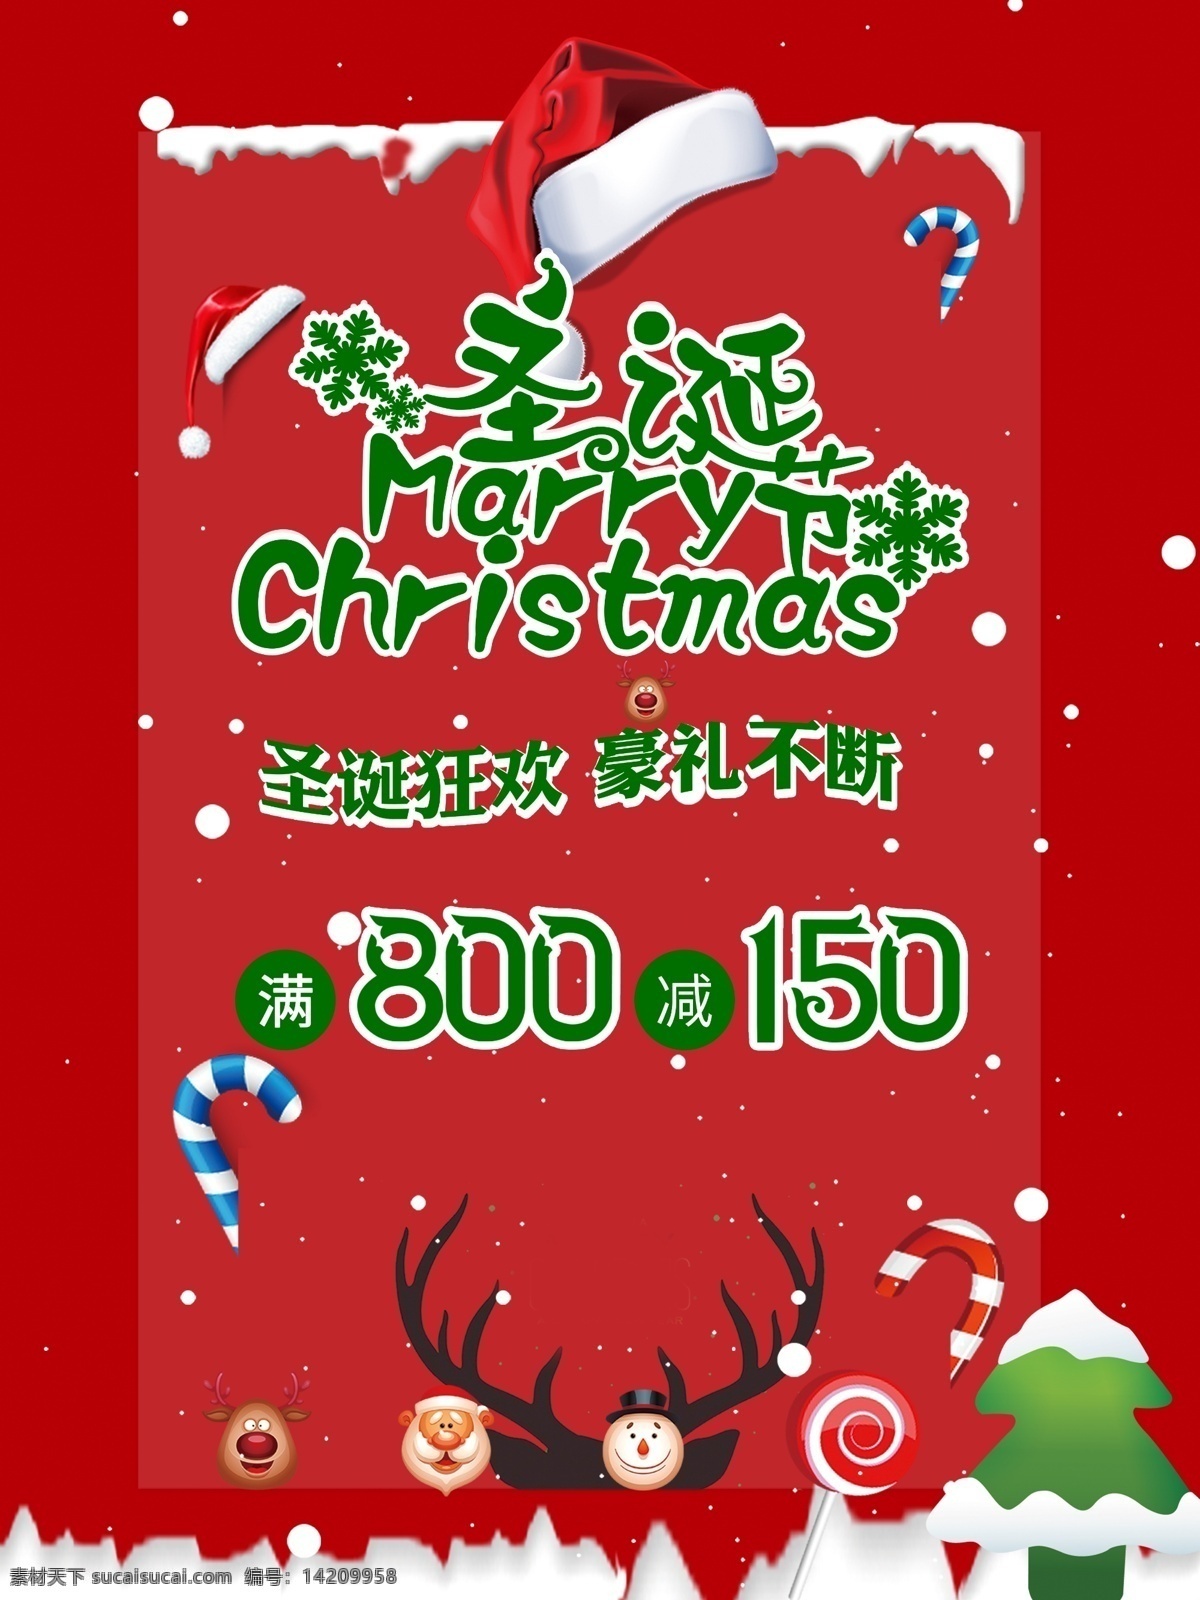 圣诞节 狂欢 钜 惠 促销 海报 促销海报 圣诞老人 圣诞树 钜惠 圣诞节促销 满减 好礼相送 满送 驯鹿 圣诞帽